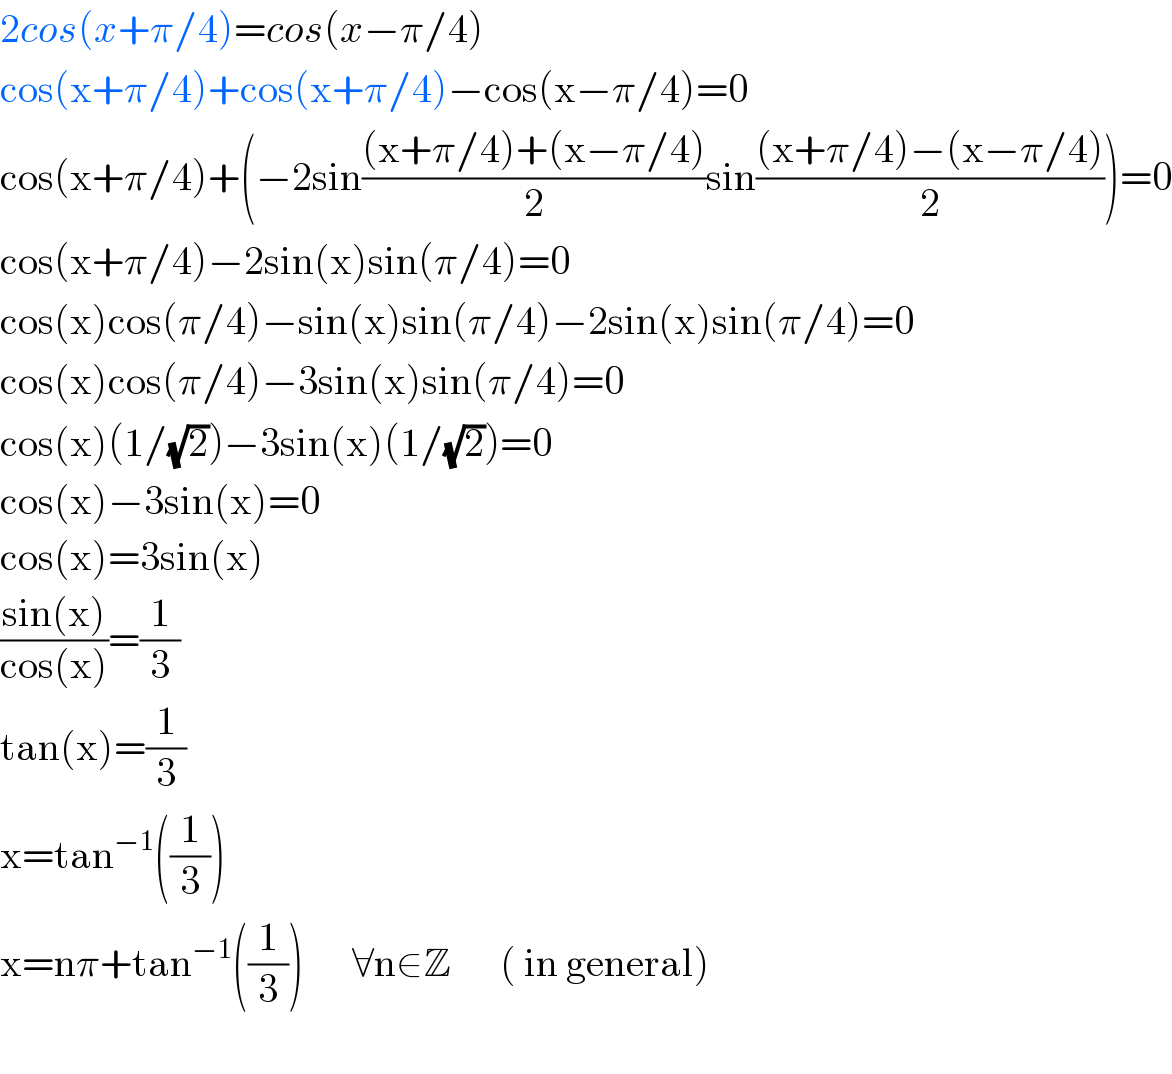 2cos(x+π/4)=cos(x−π/4)  cos(x+π/4)+cos(x+π/4)−cos(x−π/4)=0  cos(x+π/4)+(−2sin(((x+π/4)+(x−π/4))/2)sin(((x+π/4)−(x−π/4))/2))=0  cos(x+π/4)−2sin(x)sin(π/4)=0  cos(x)cos(π/4)−sin(x)sin(π/4)−2sin(x)sin(π/4)=0  cos(x)cos(π/4)−3sin(x)sin(π/4)=0  cos(x)(1/(√2))−3sin(x)(1/(√2))=0  cos(x)−3sin(x)=0  cos(x)=3sin(x)  ((sin(x))/(cos(x)))=(1/3)  tan(x)=(1/3)  x=tan^(−1) ((1/3))  x=nπ+tan^(−1) ((1/3))      ∀n∈Z      ( in general)    